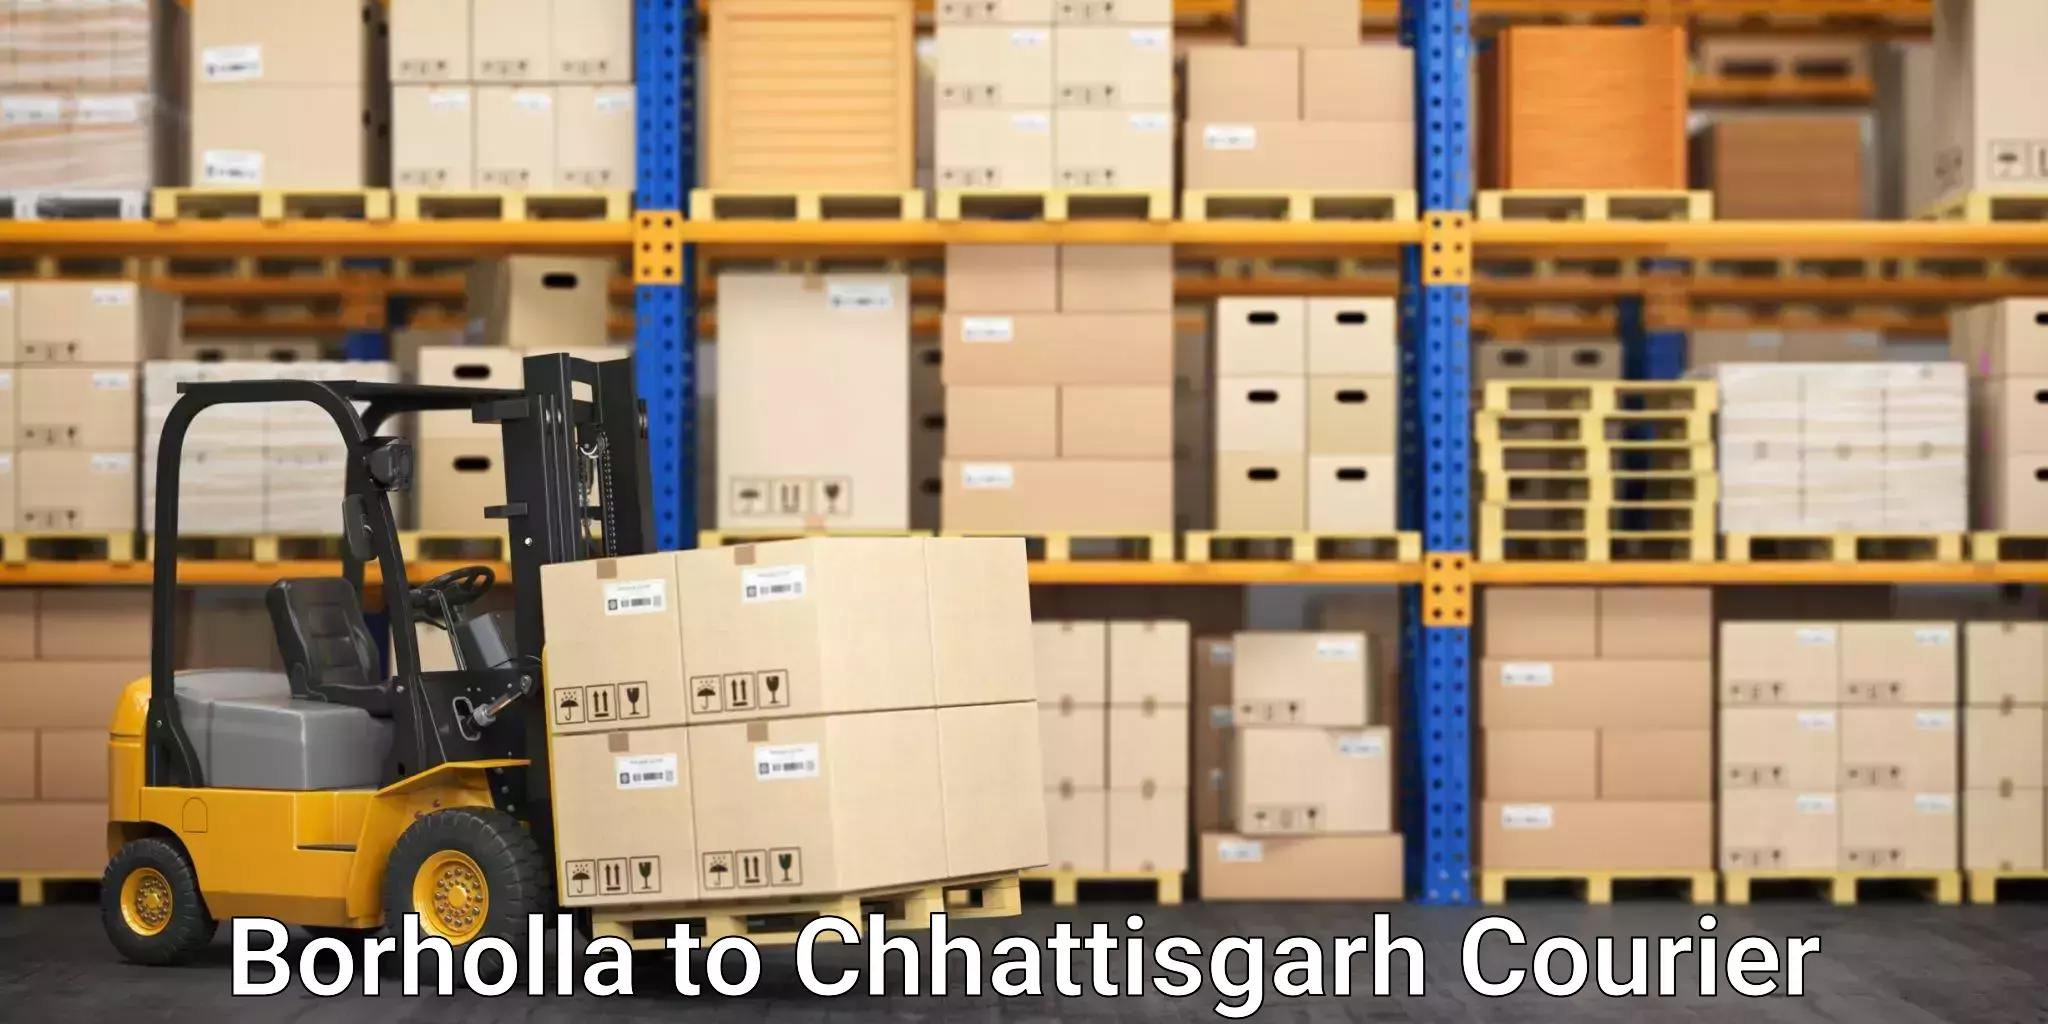 Cross-border shipping Borholla to Patna Chhattisgarh